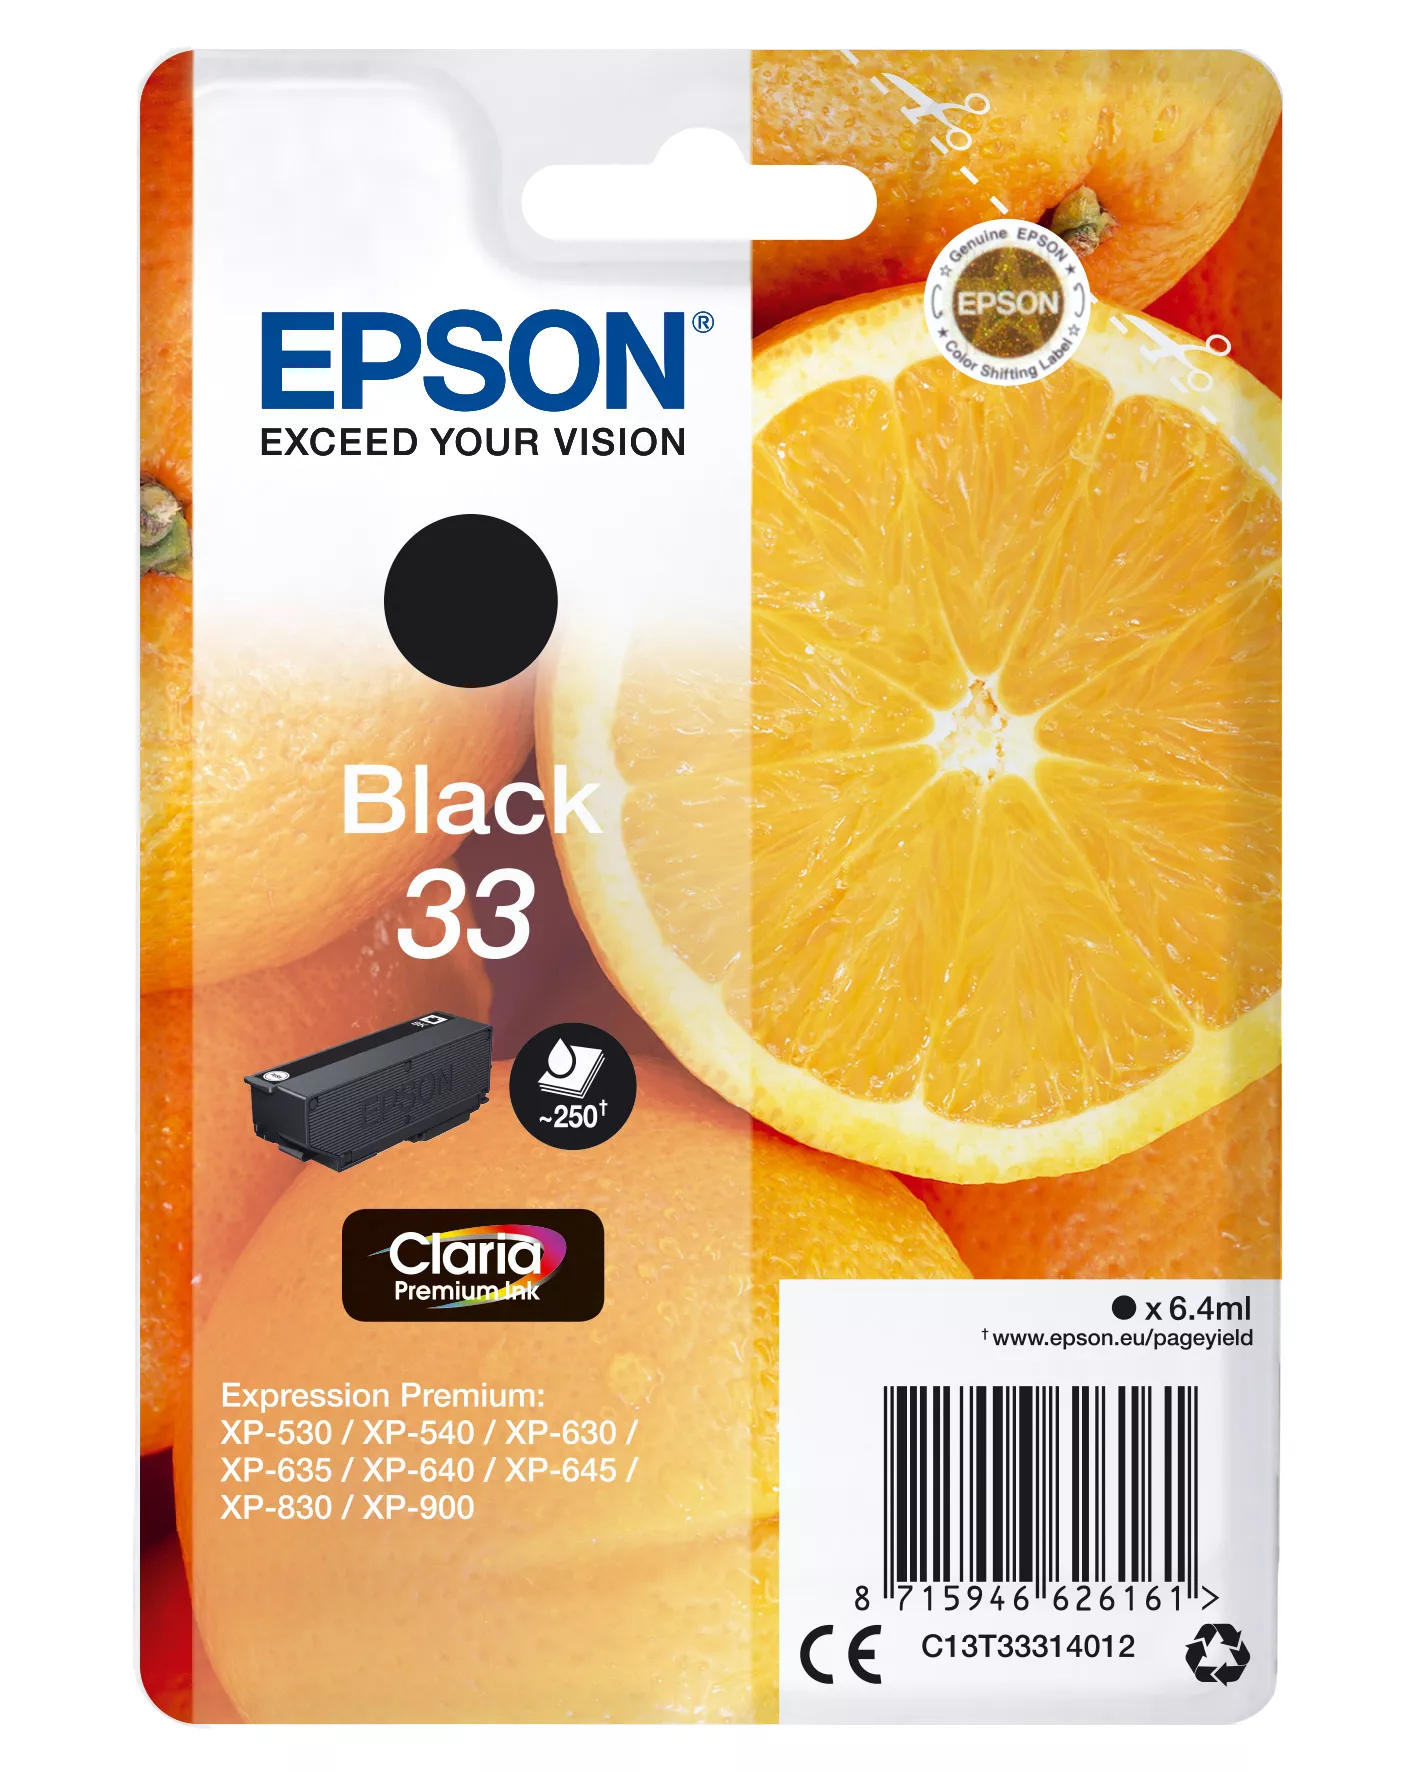 Achat EPSON Cartouche Oranges Encre Claria Premium Noir sur hello RSE